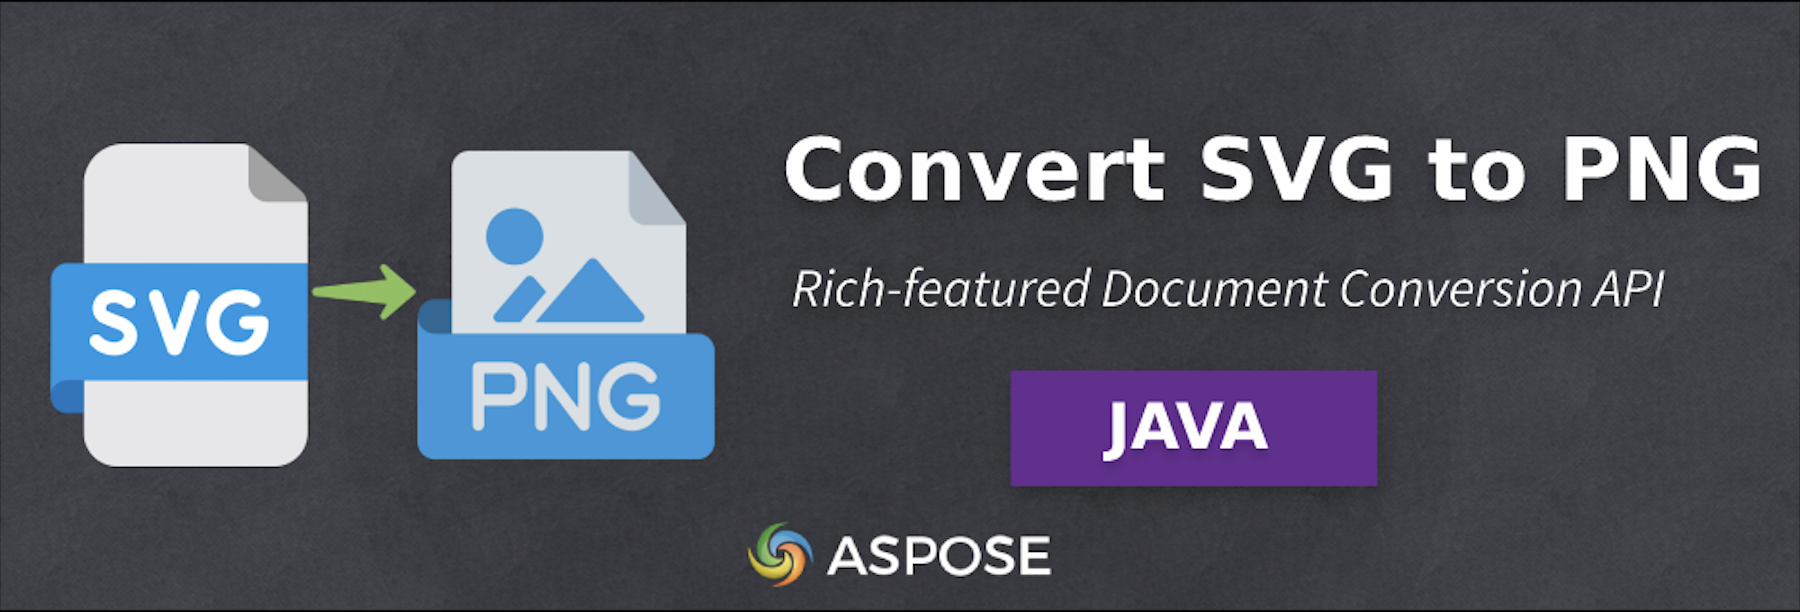 Konversi SVG ke PNG di Java - Perangkat Lunak Konversi Gambar